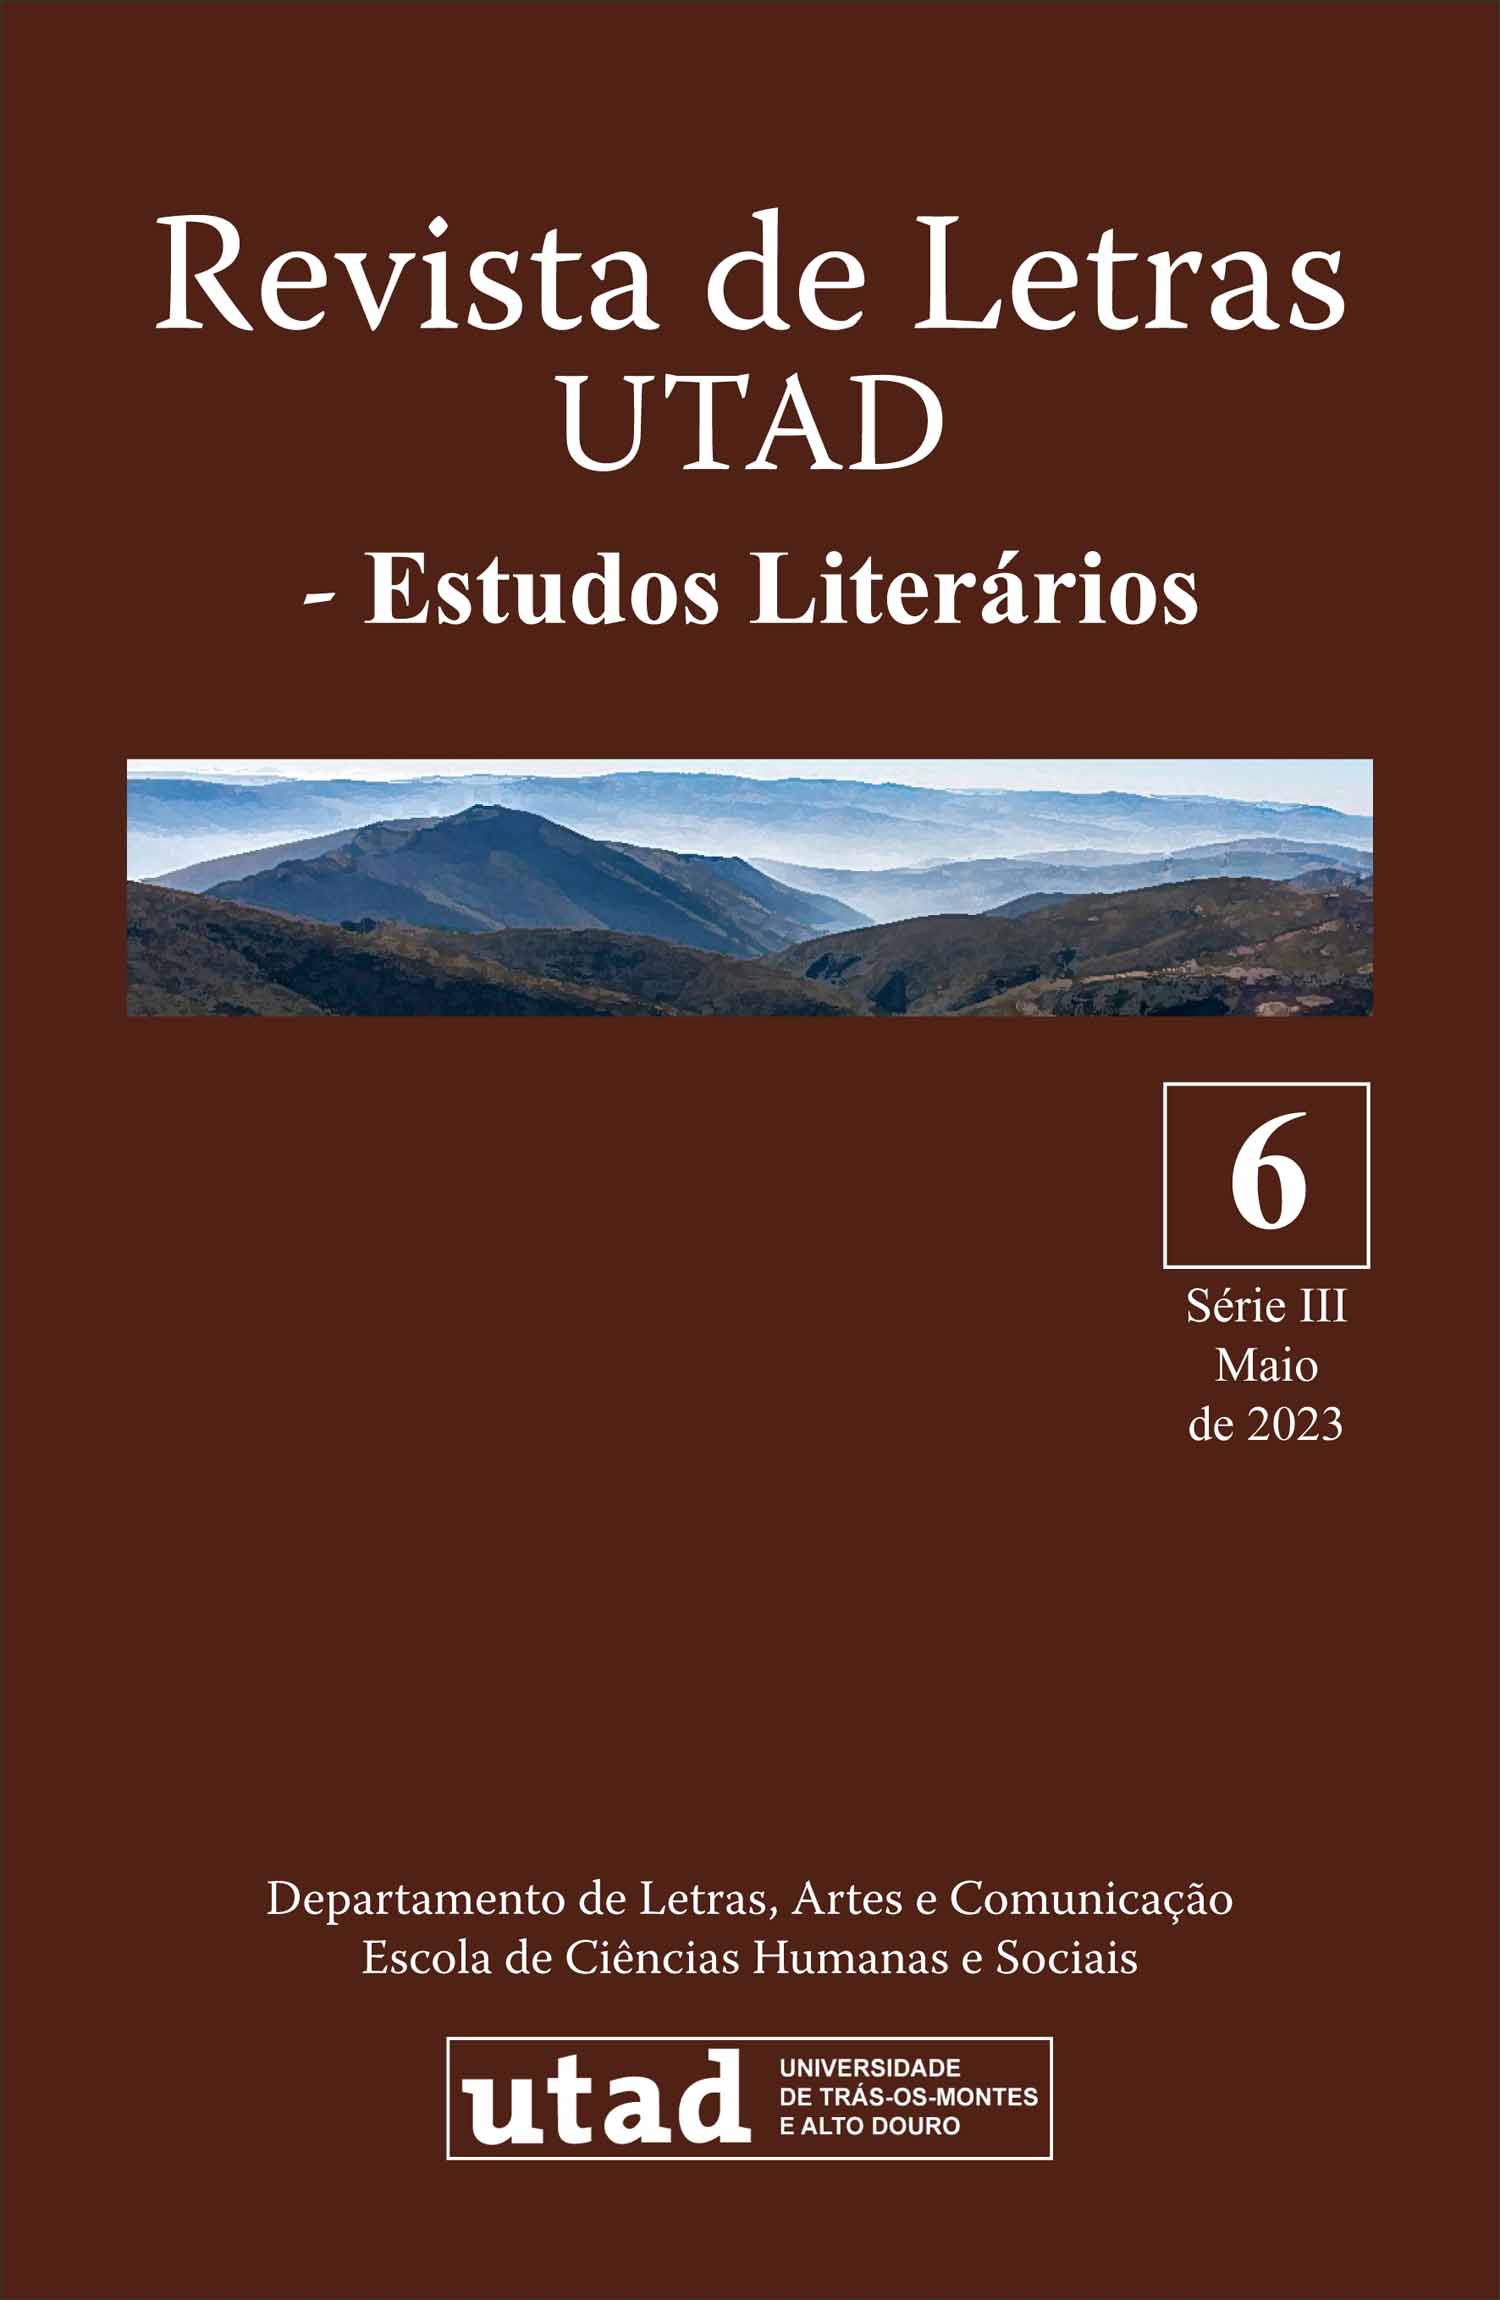 Revista de Letras UTAD, série III, nº6